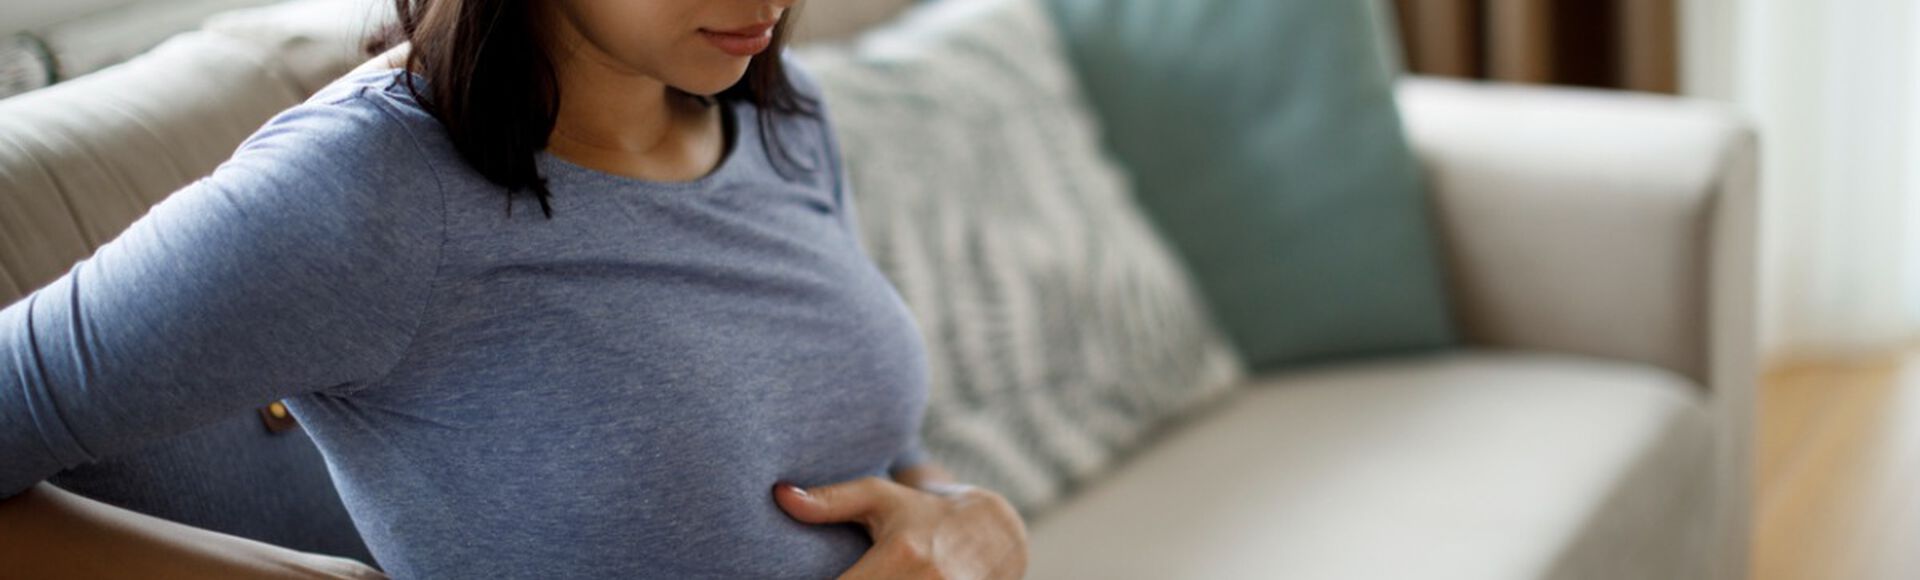 Mulher grávida com maos na barriga em sinal de desconforto